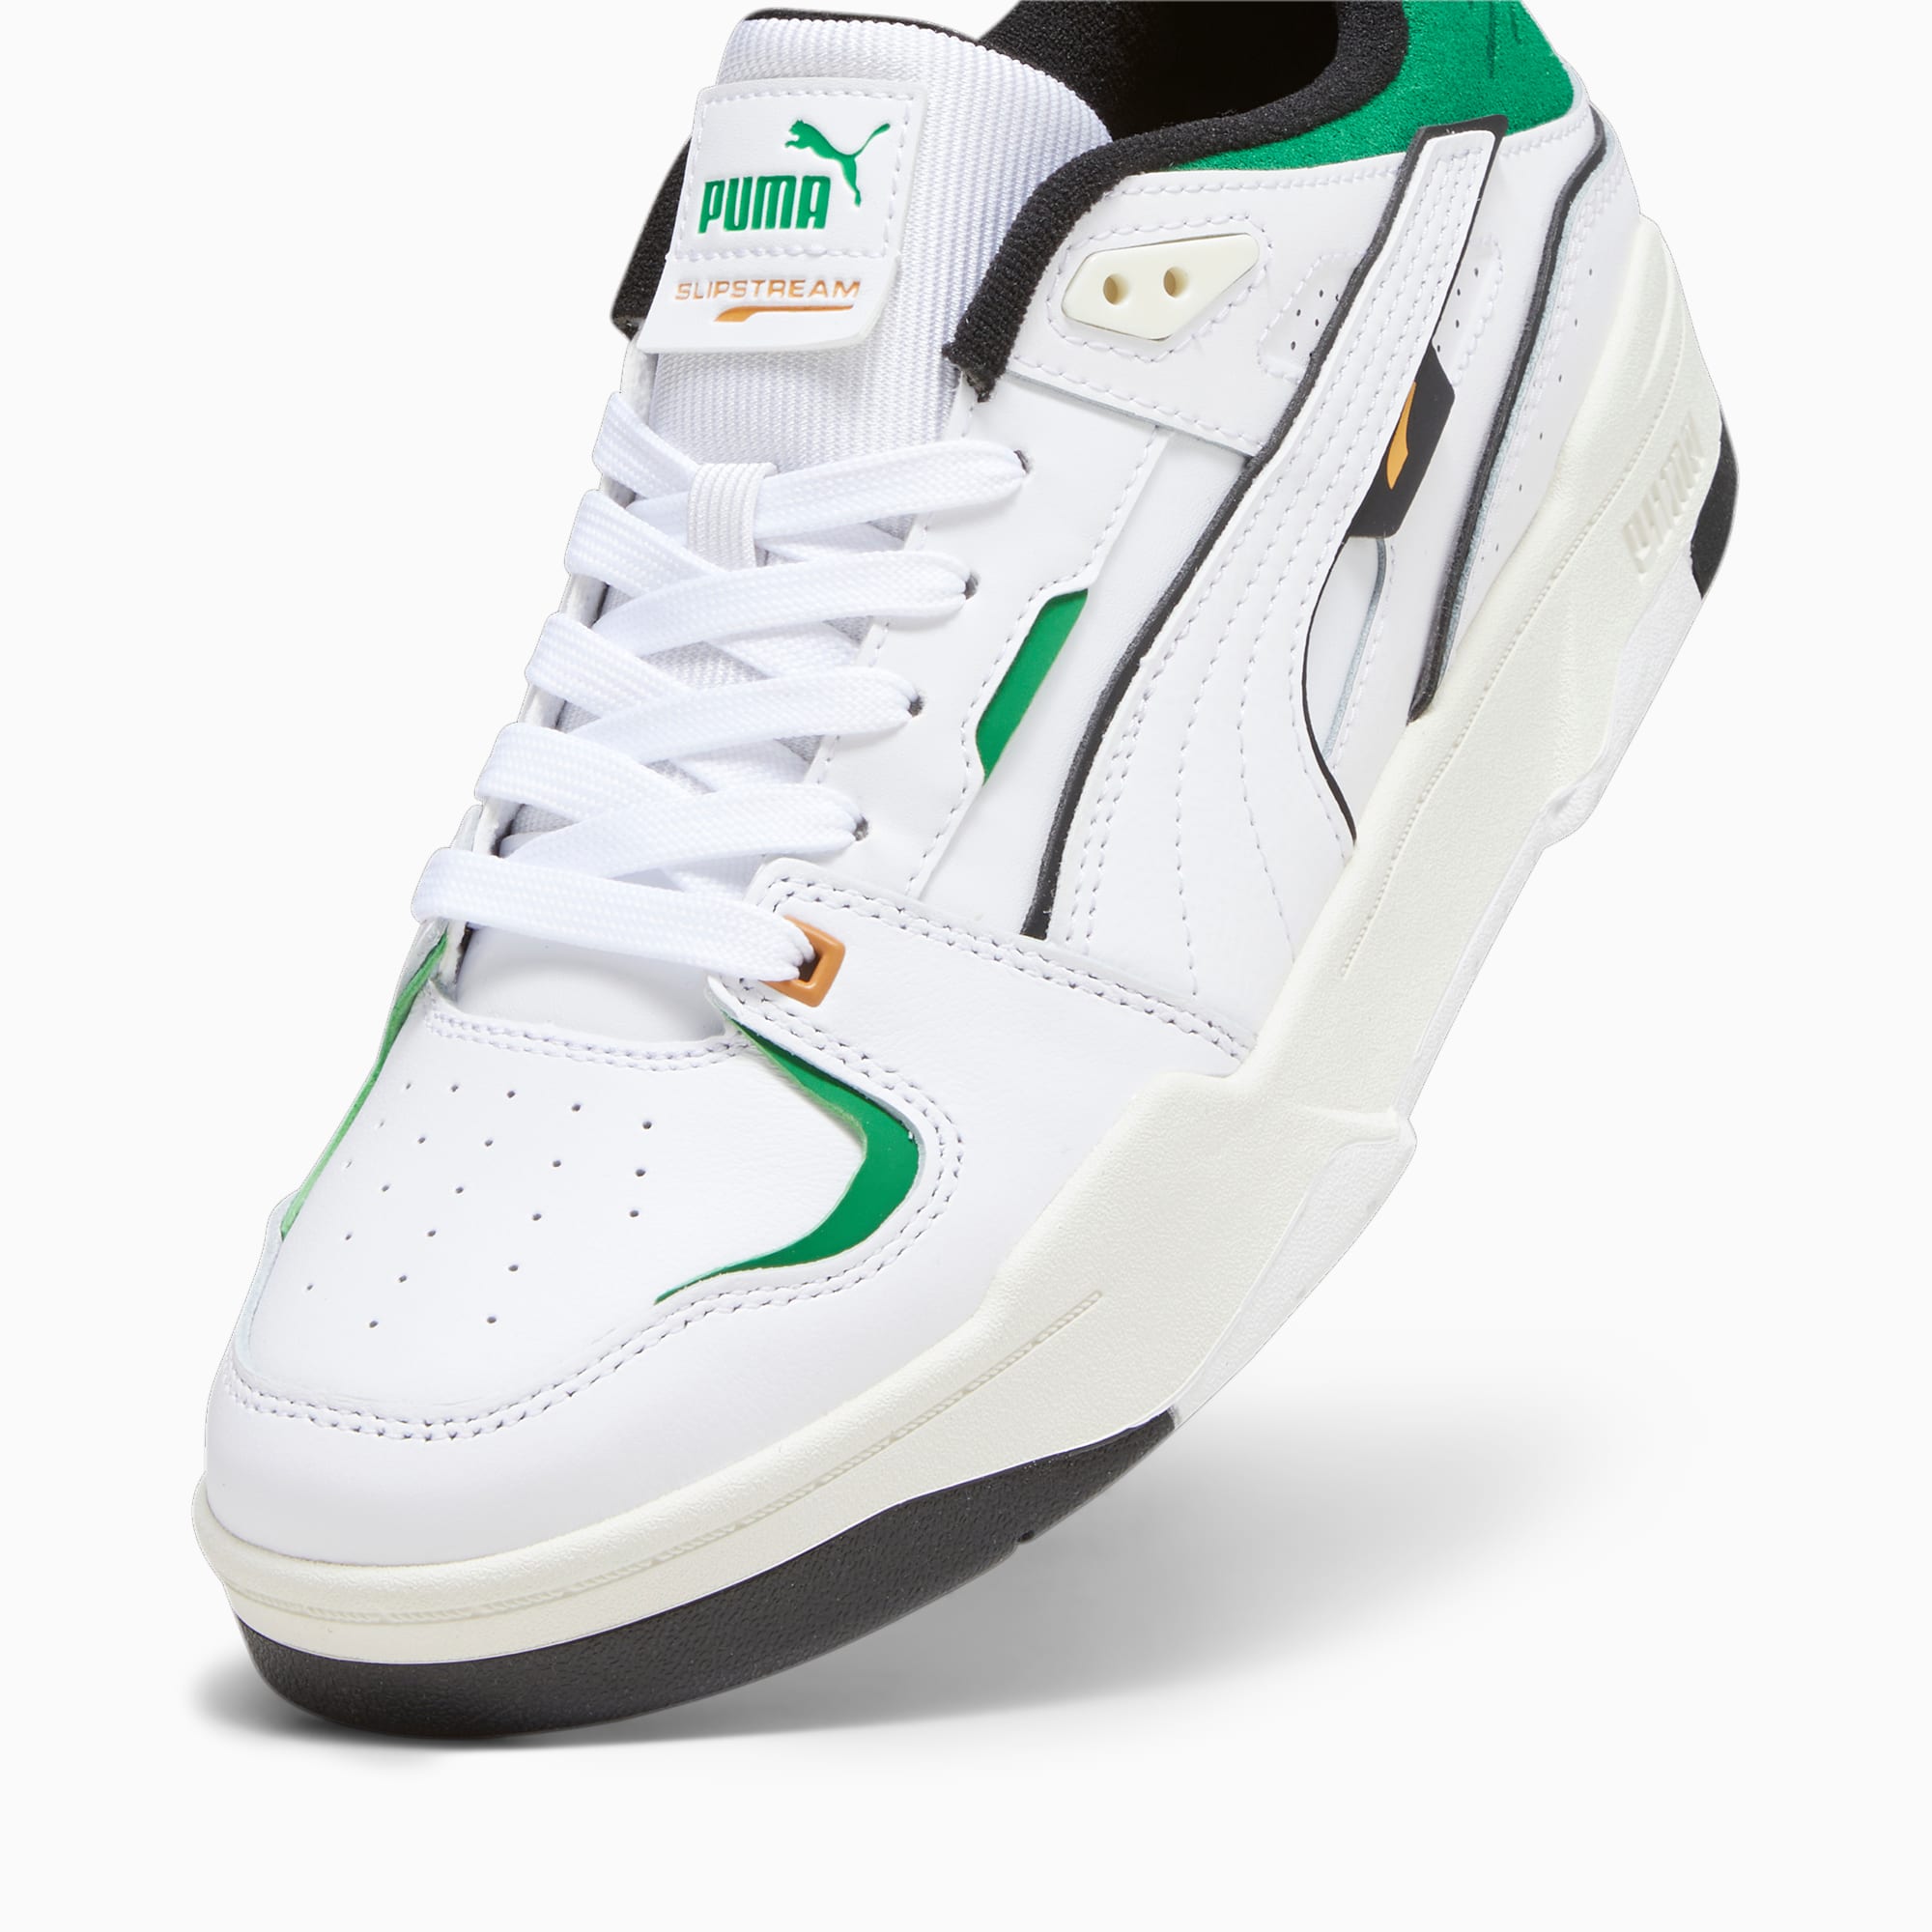 PUMA Chaussure Sneakers Slipstream Bball, Blanc/Vert